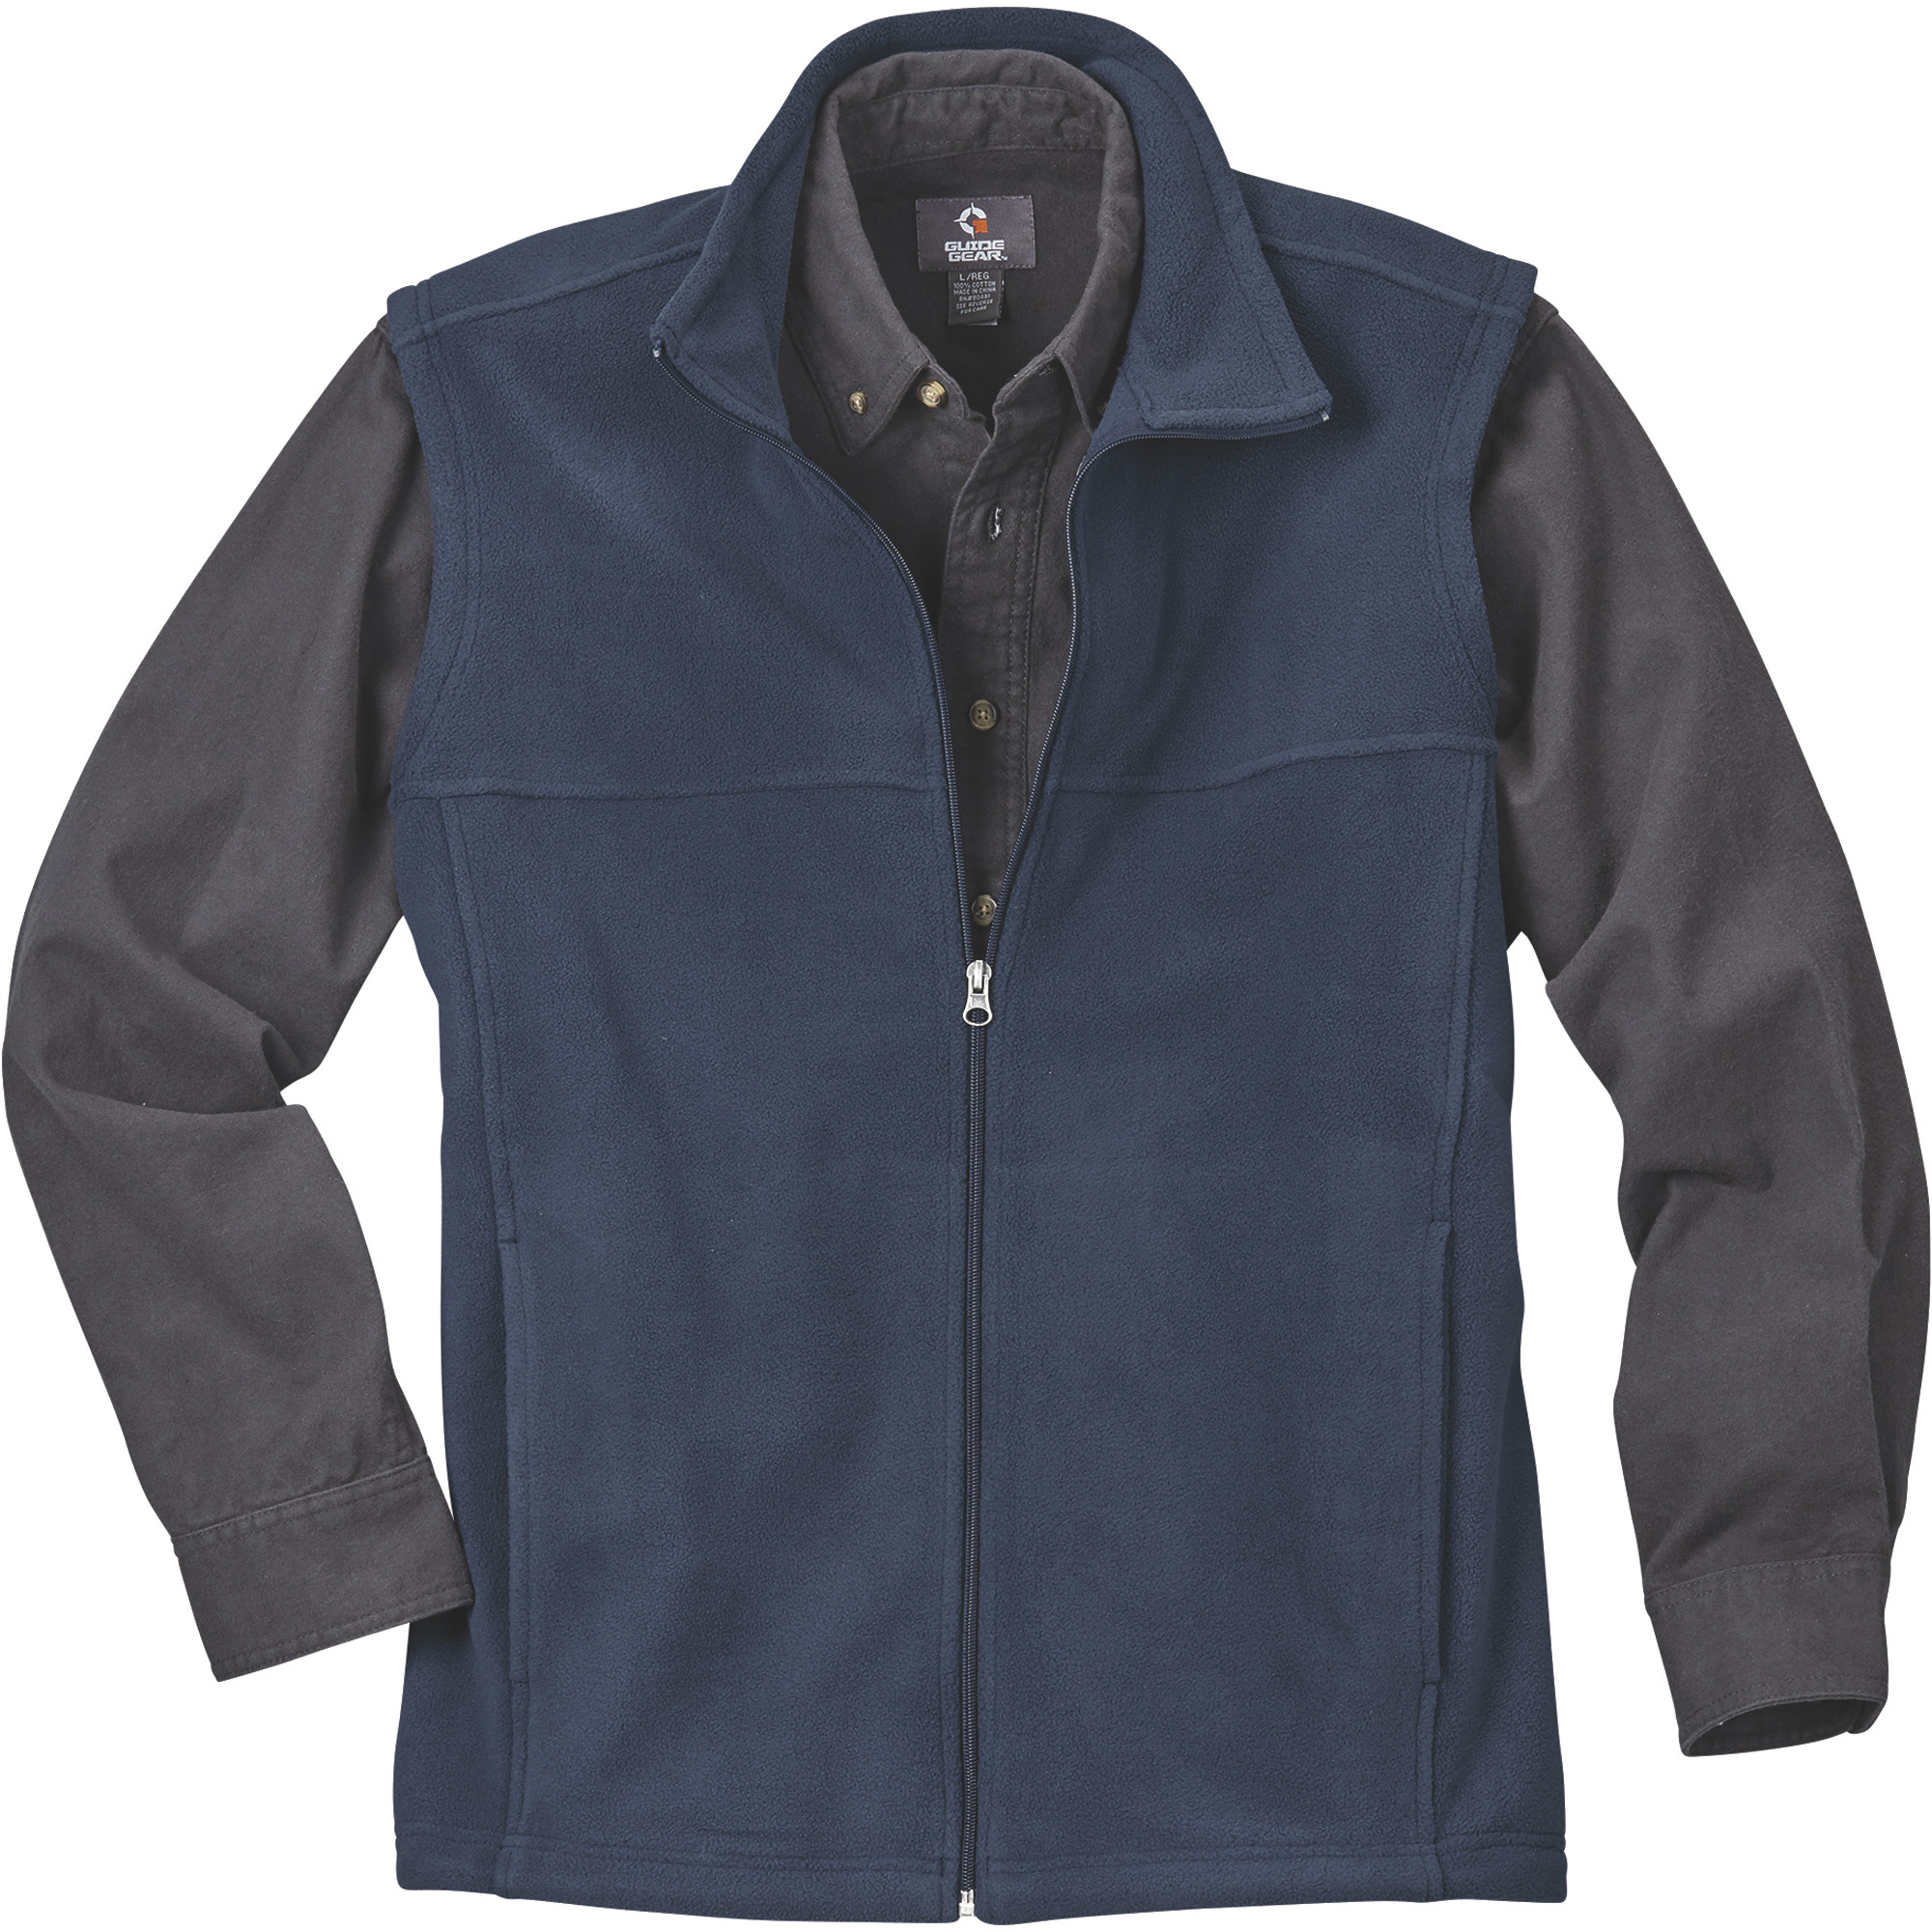 Gravel Gear Men's Zip-Up Fleece Vest â Navy, Large